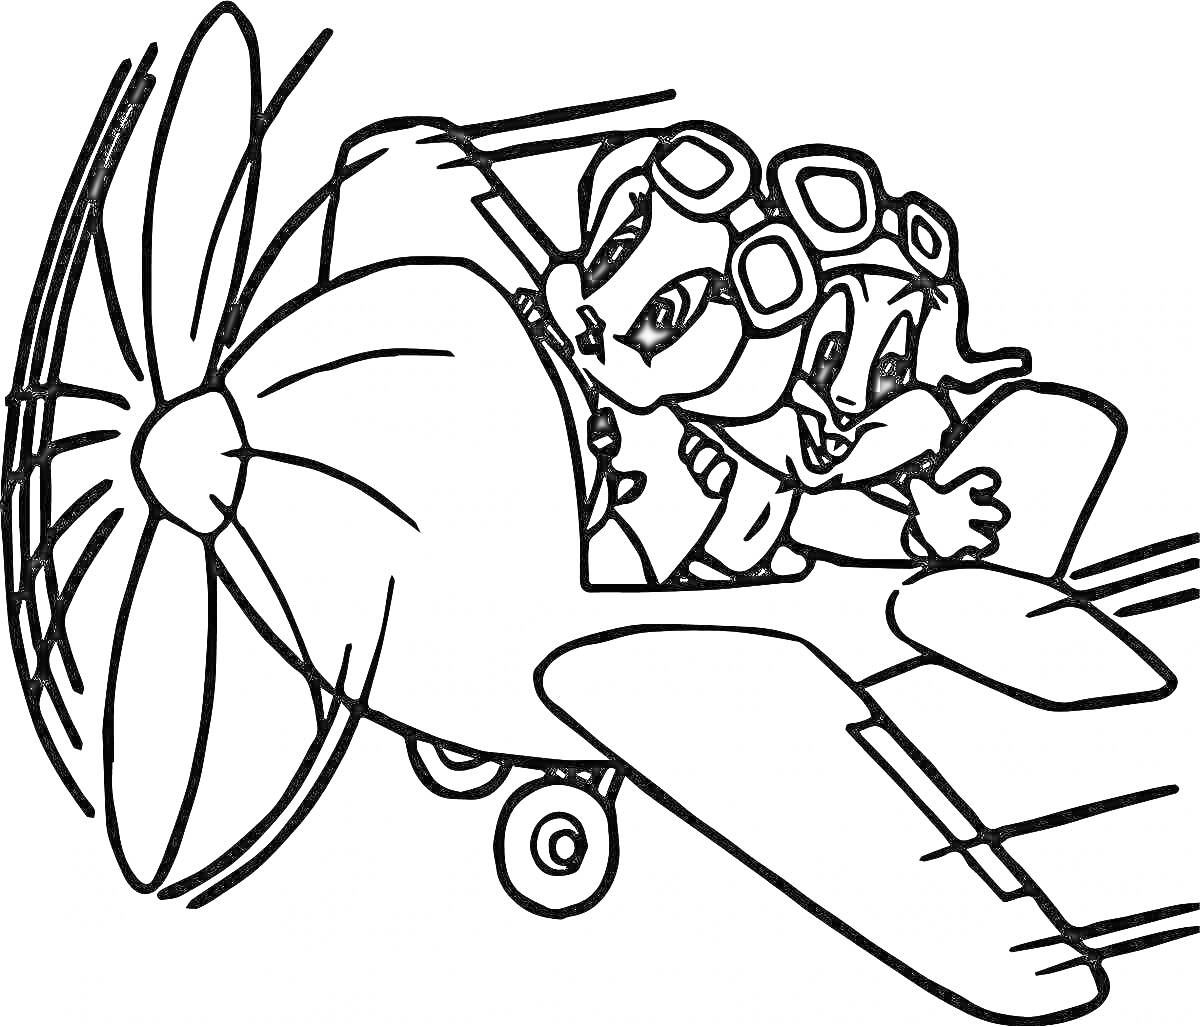 Раскраска Летчик и его друг на самолете с пропеллером